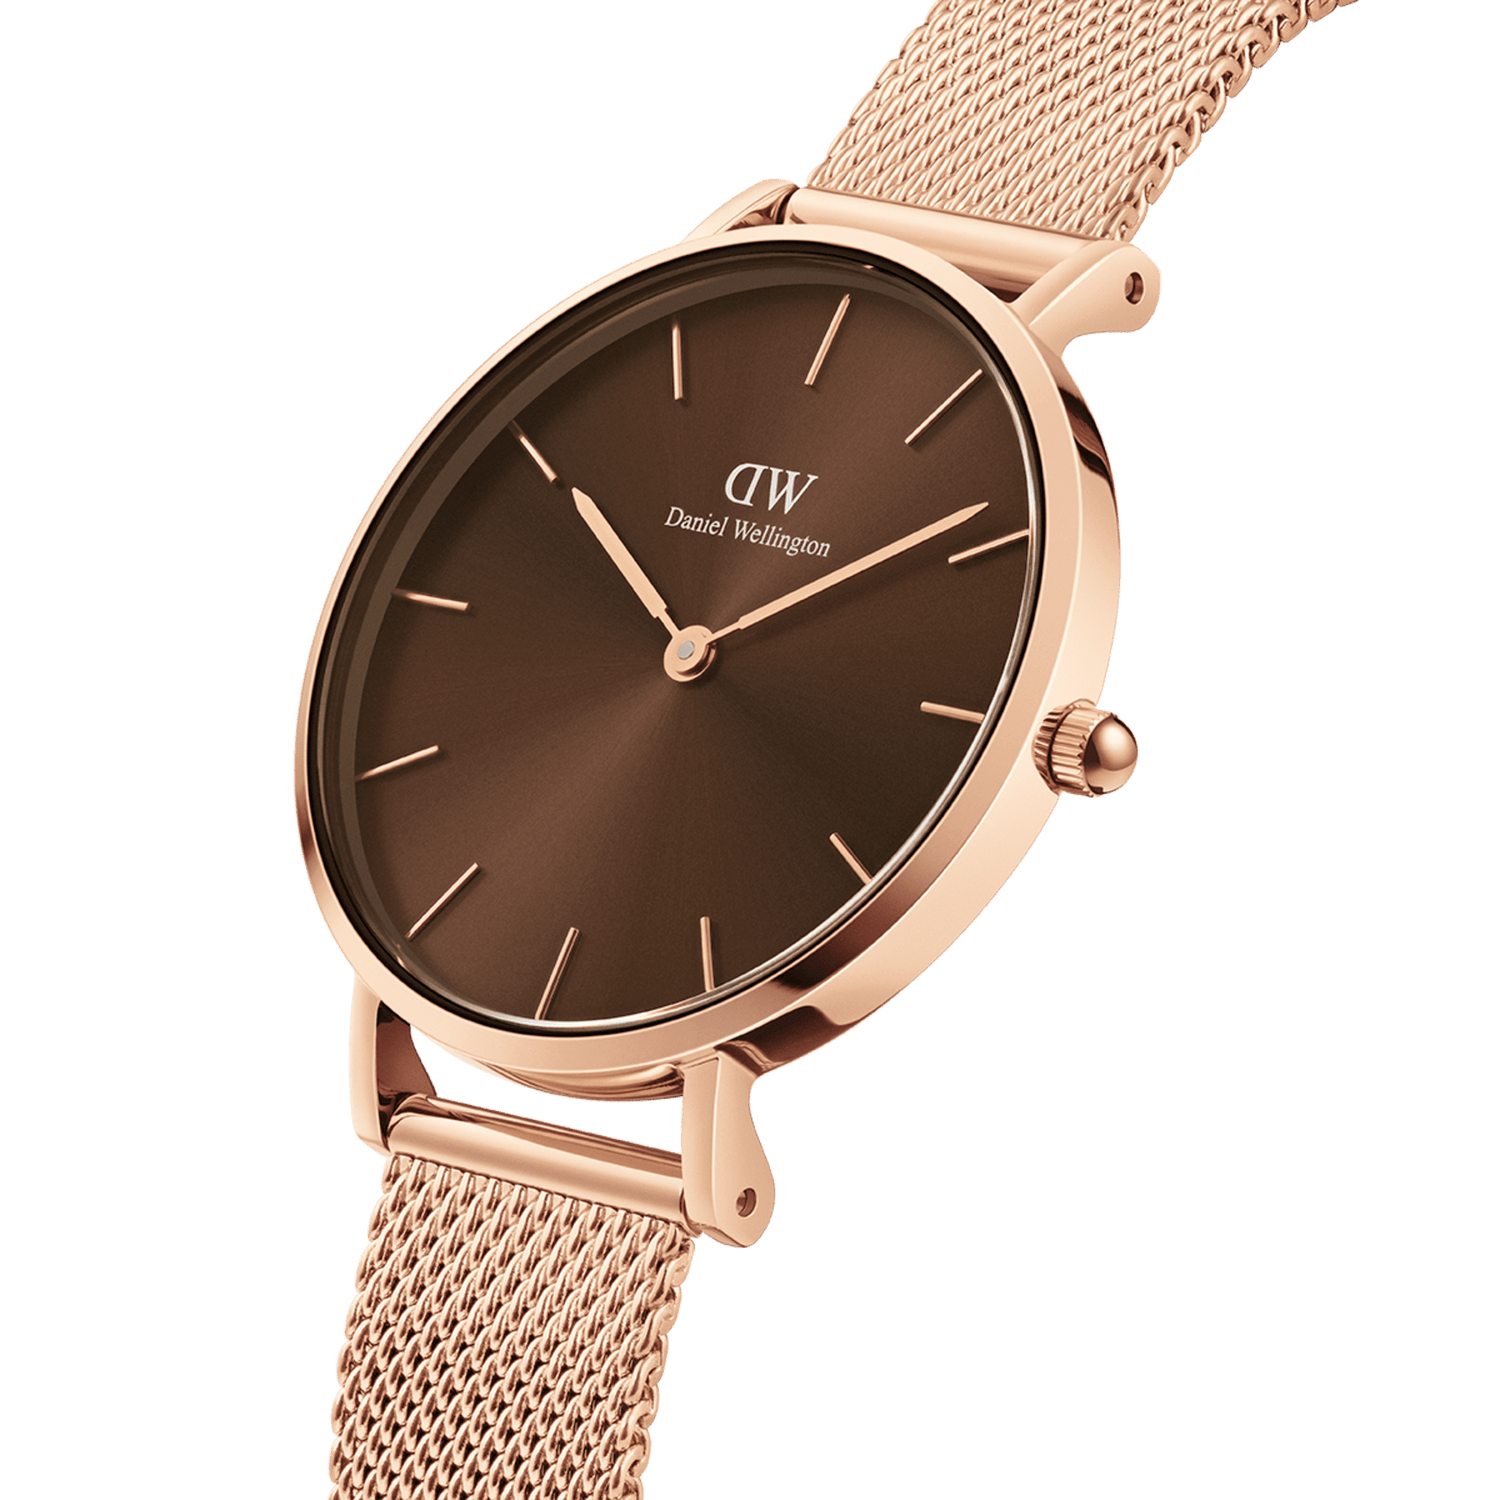 メンズ腕時計 - ダニエルウェリントンメンズ腕時計ラインナップ | DW